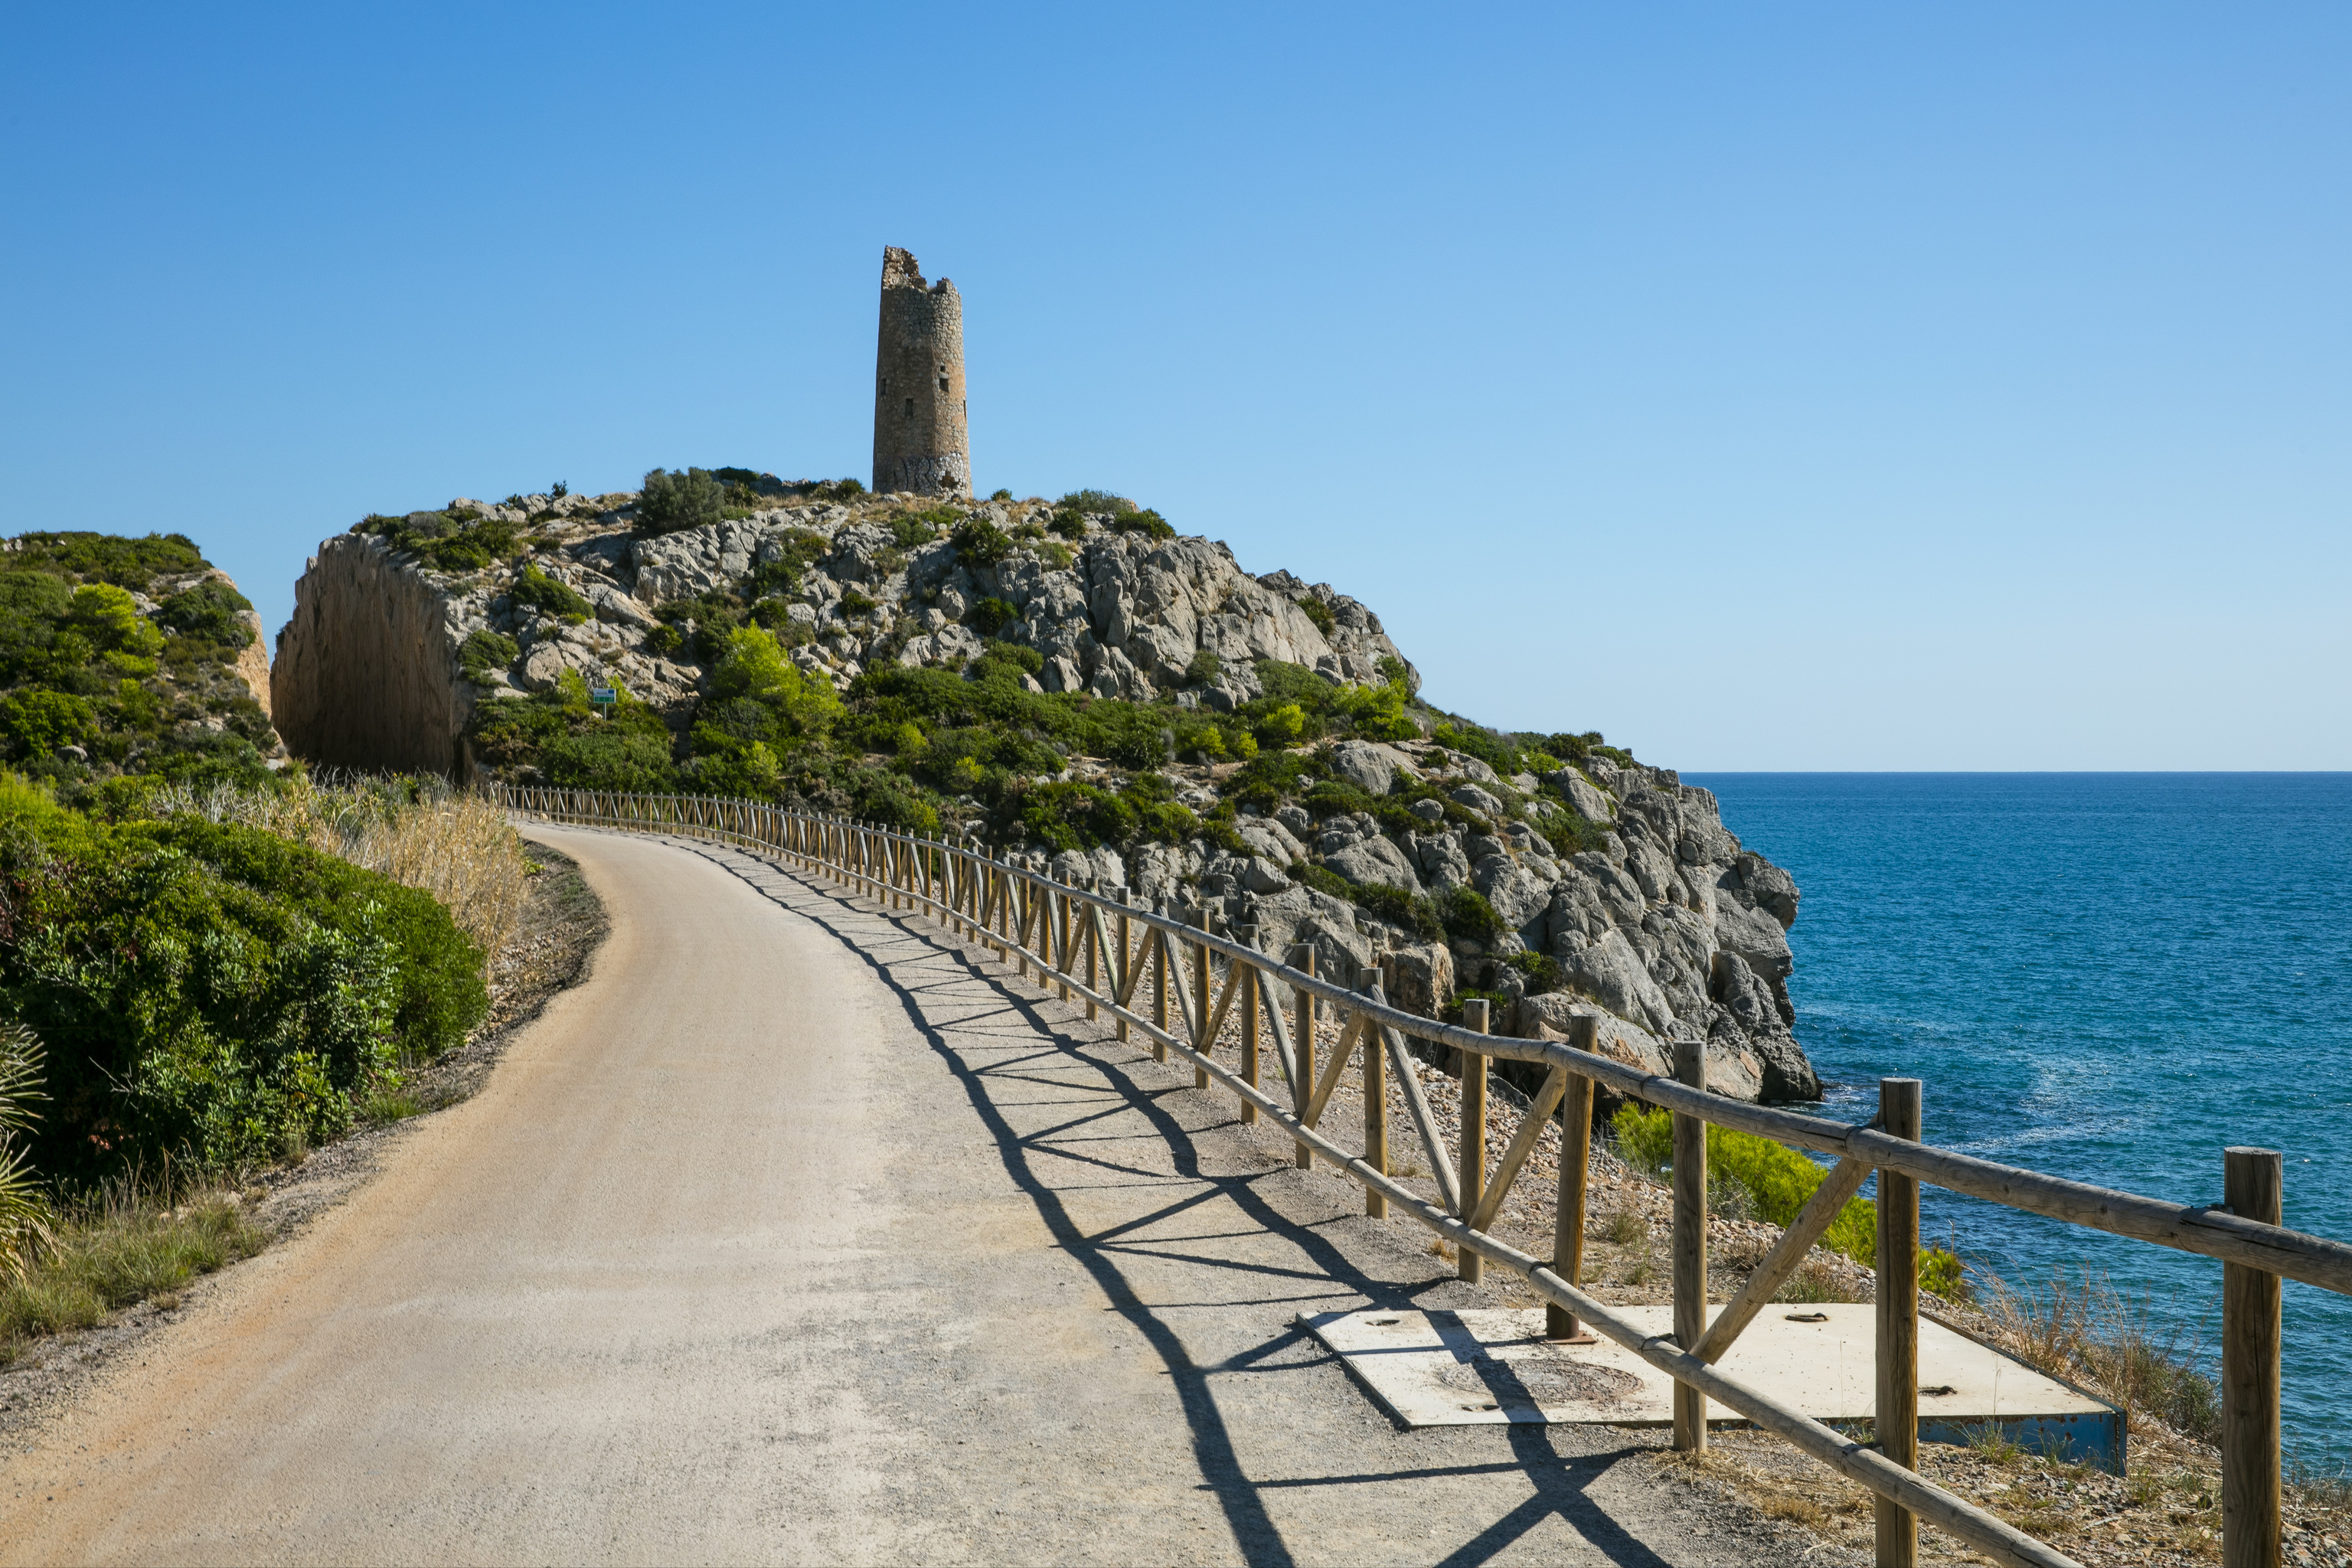 Desde esta va verde se alcanzan espectaculares vistas del mar Mediterrneo y sus calas.